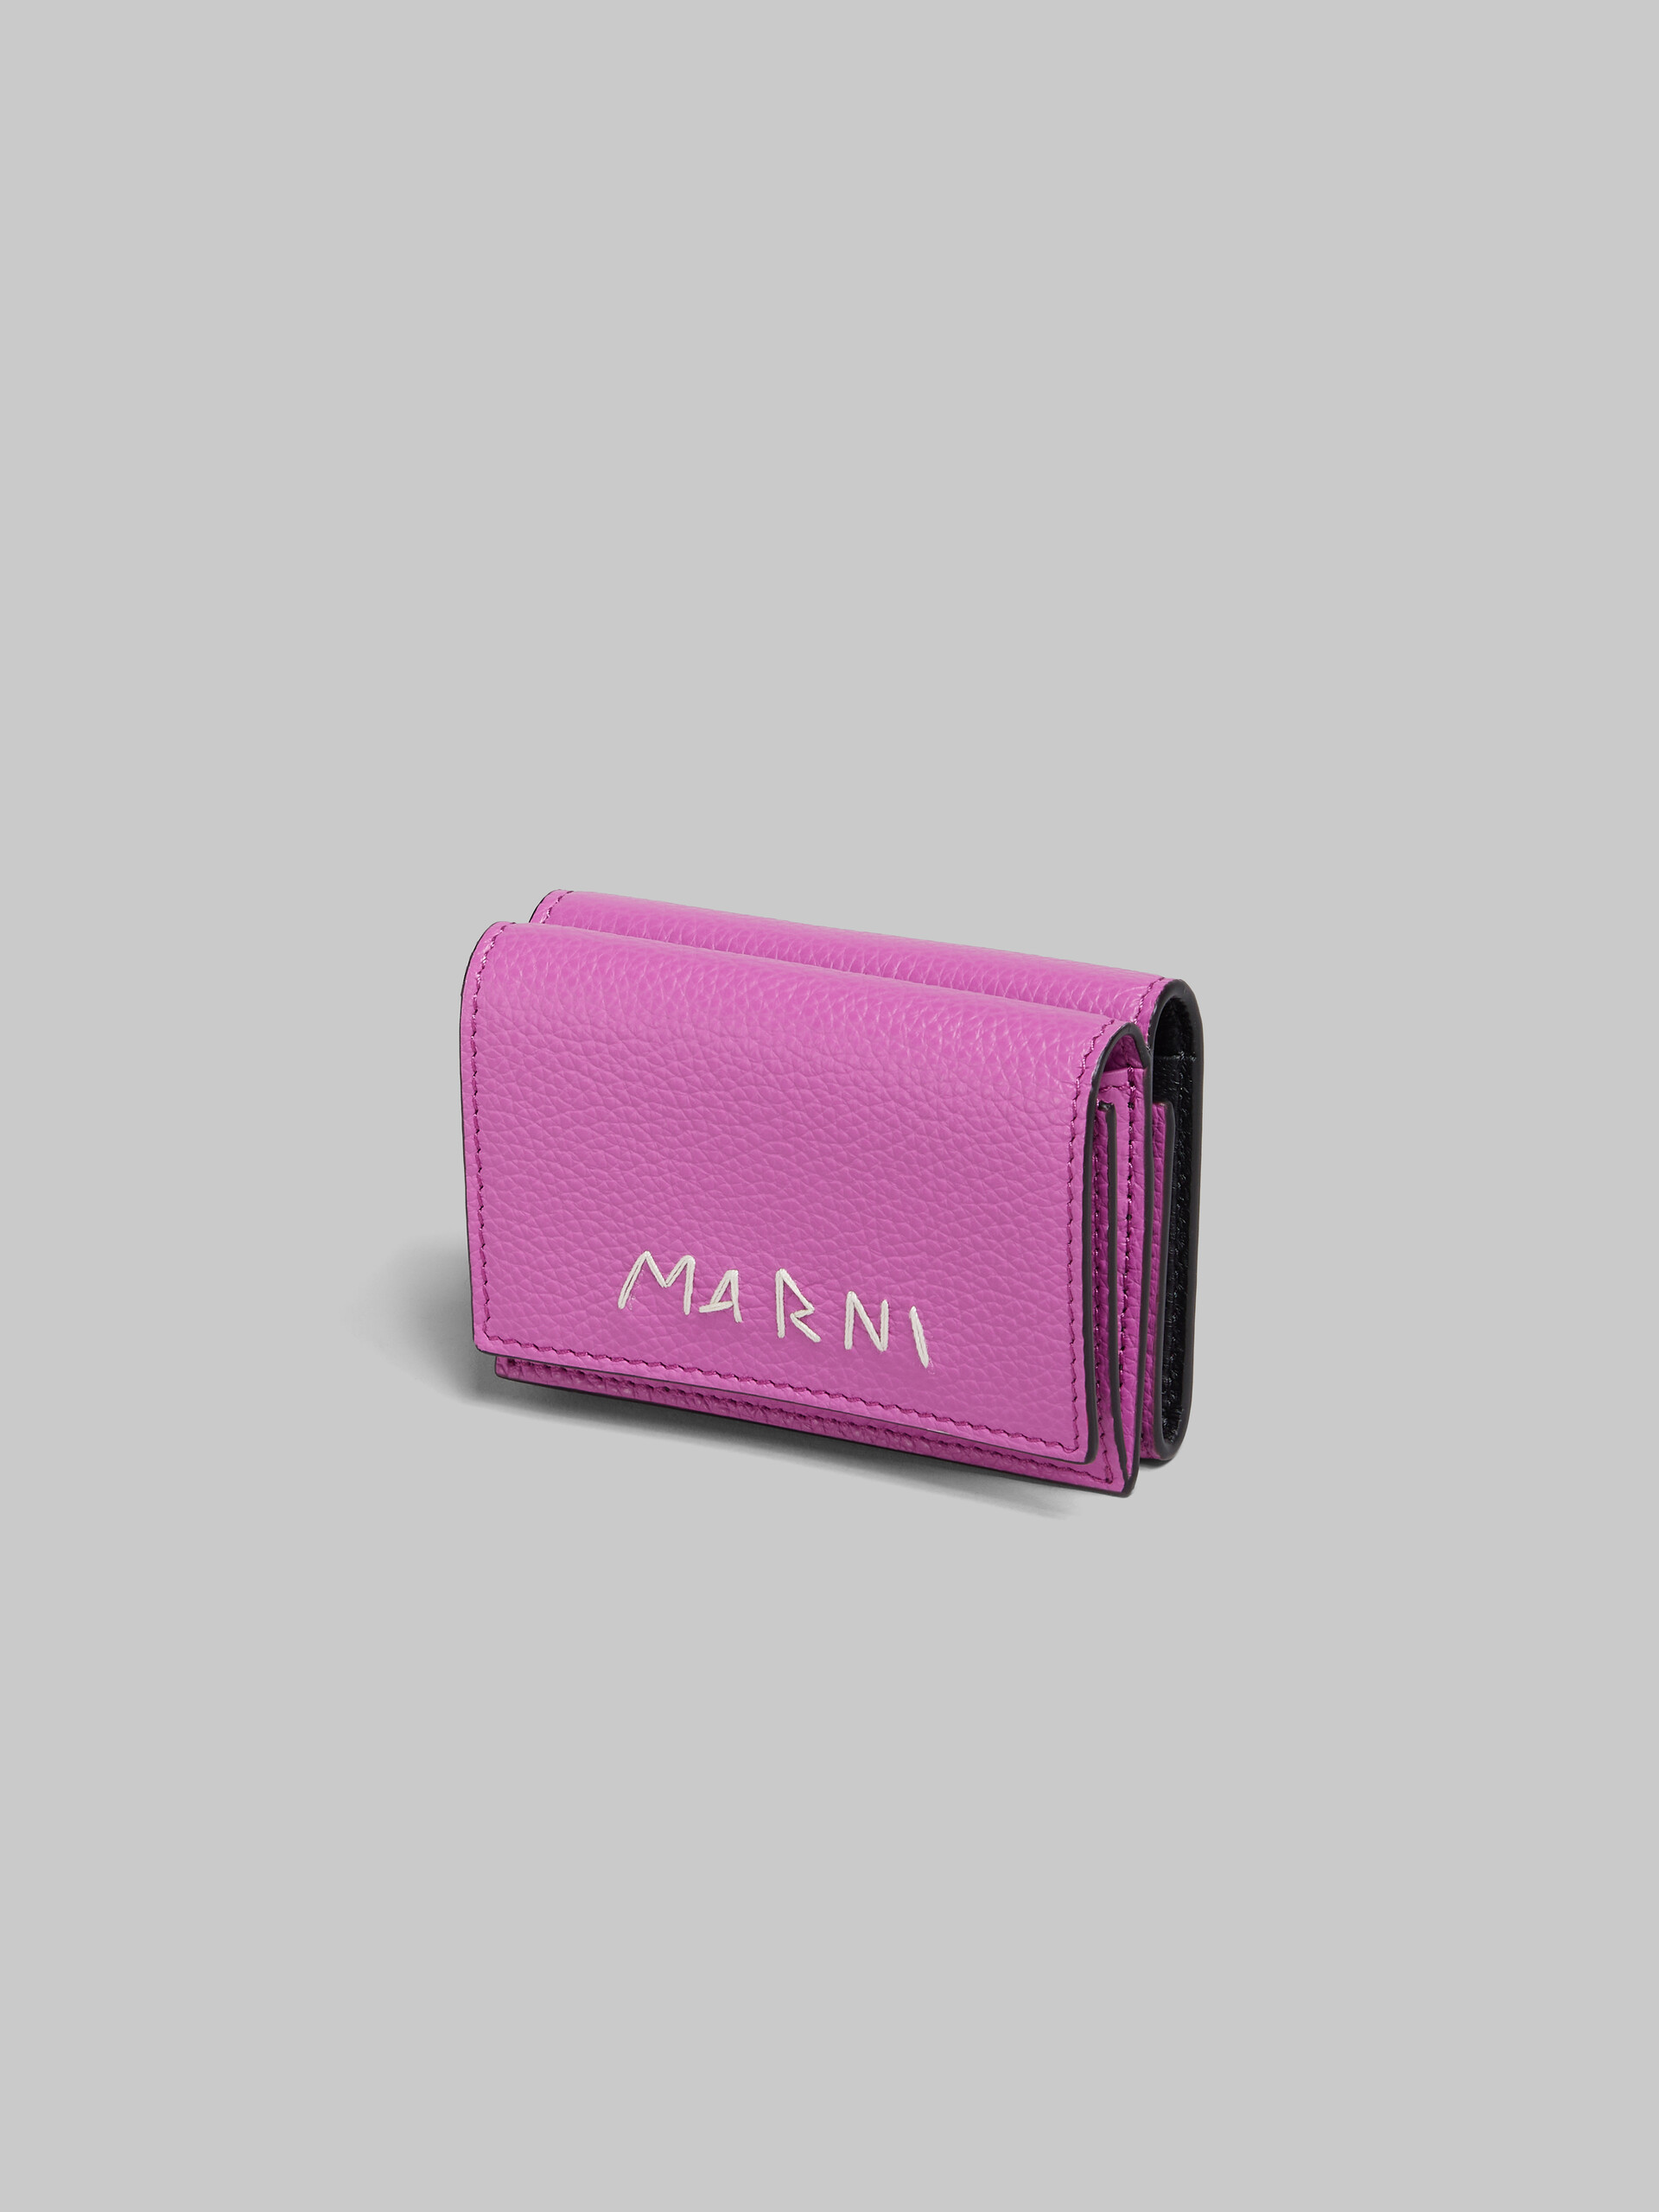 Rosafarbene dreifache Faltbrieftasche aus Leder mit Marni-Flicken - Brieftaschen - Image 4